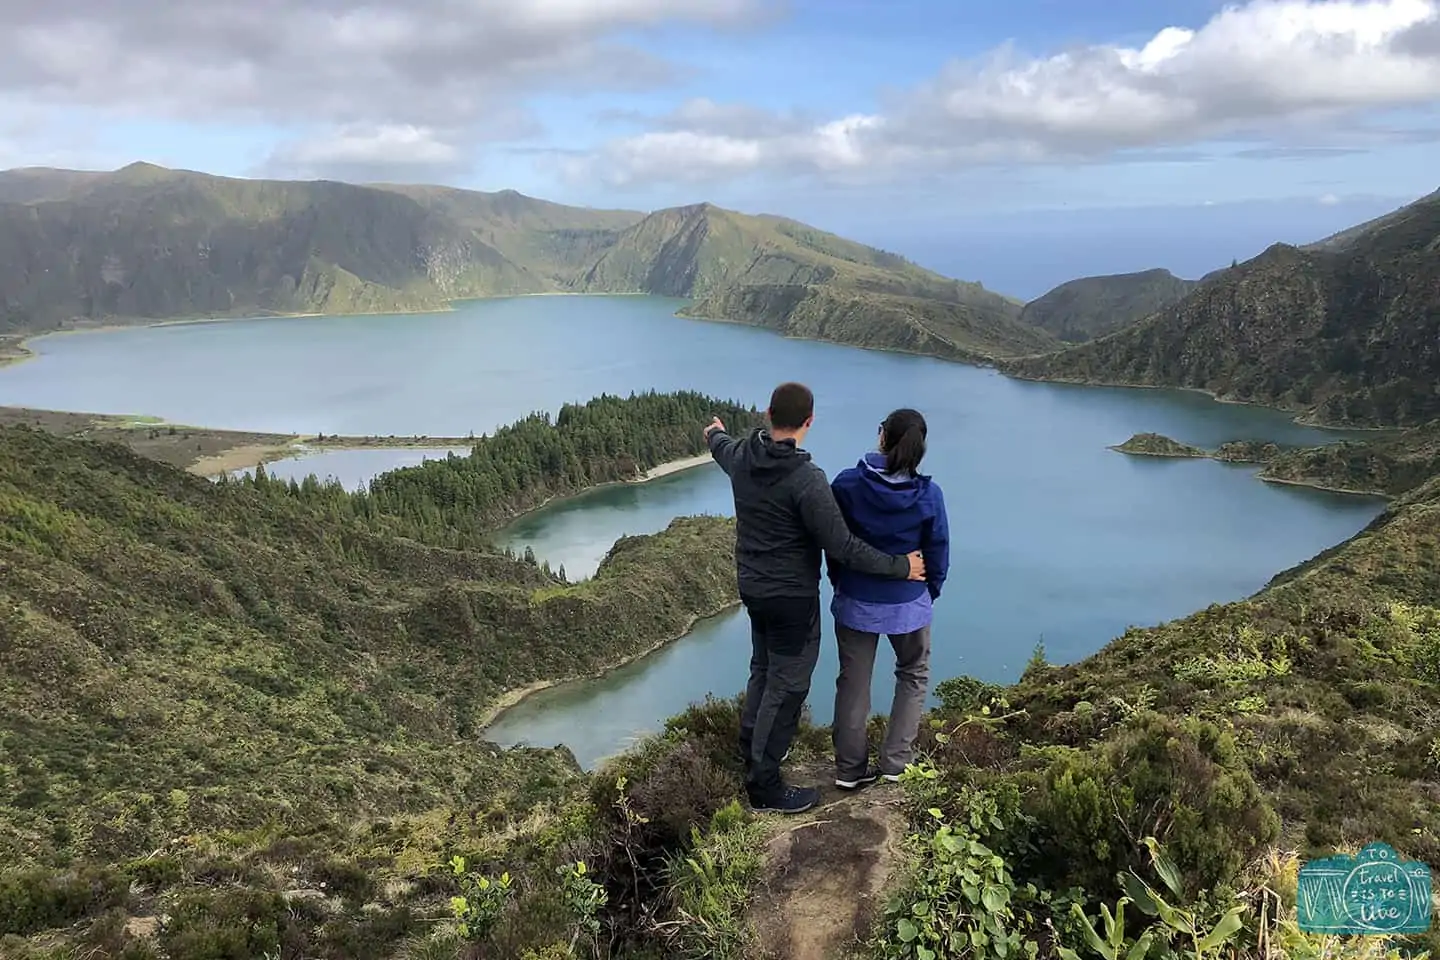 Lagoa do Fogo, Ilha de São Miguel, Açores